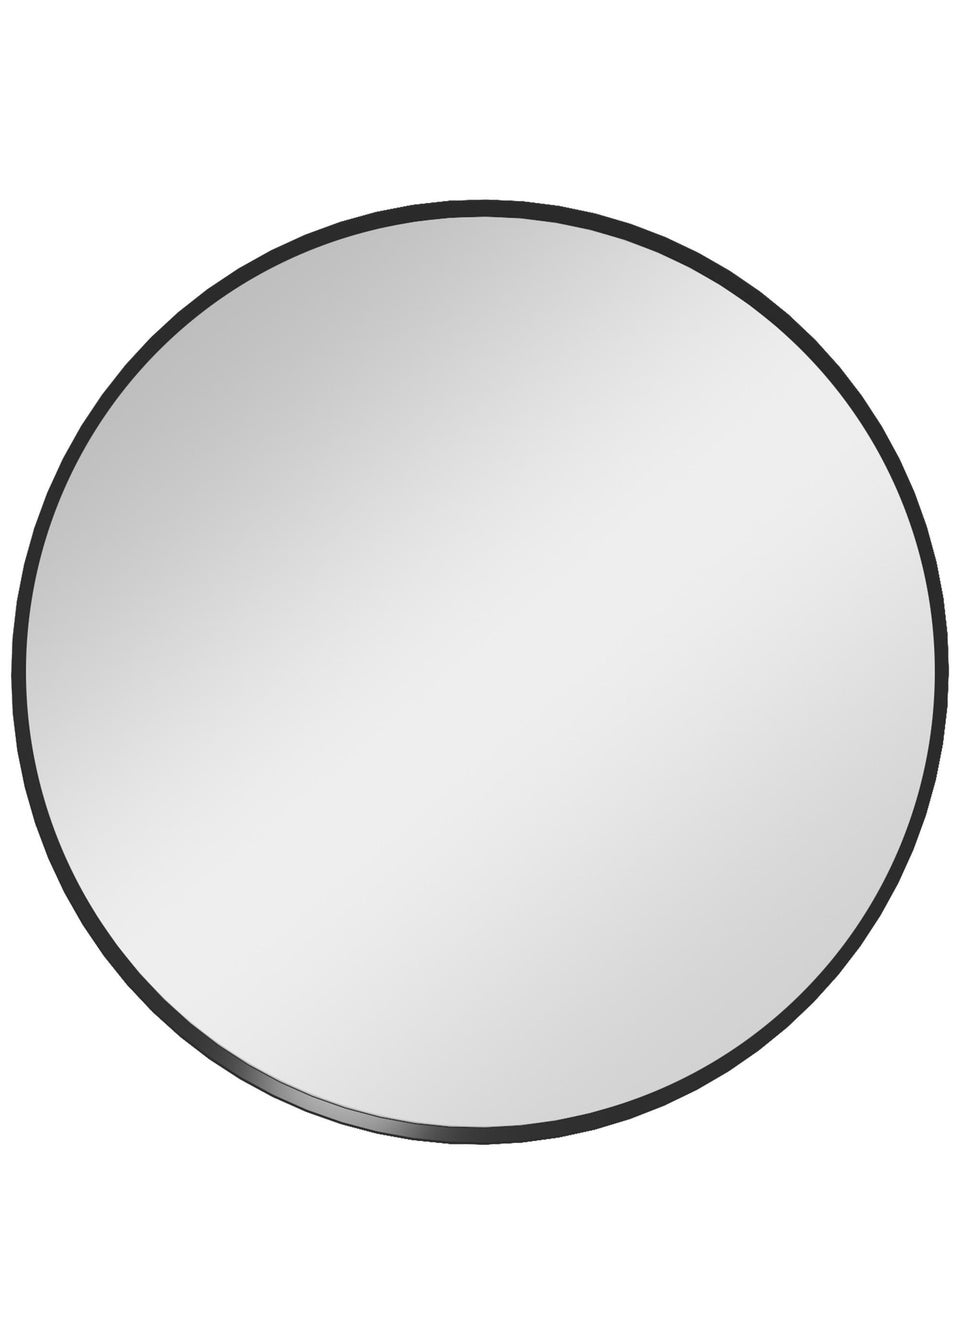 HOMCOM Black Wall Mirror (61cm x 61cm x 1cm)